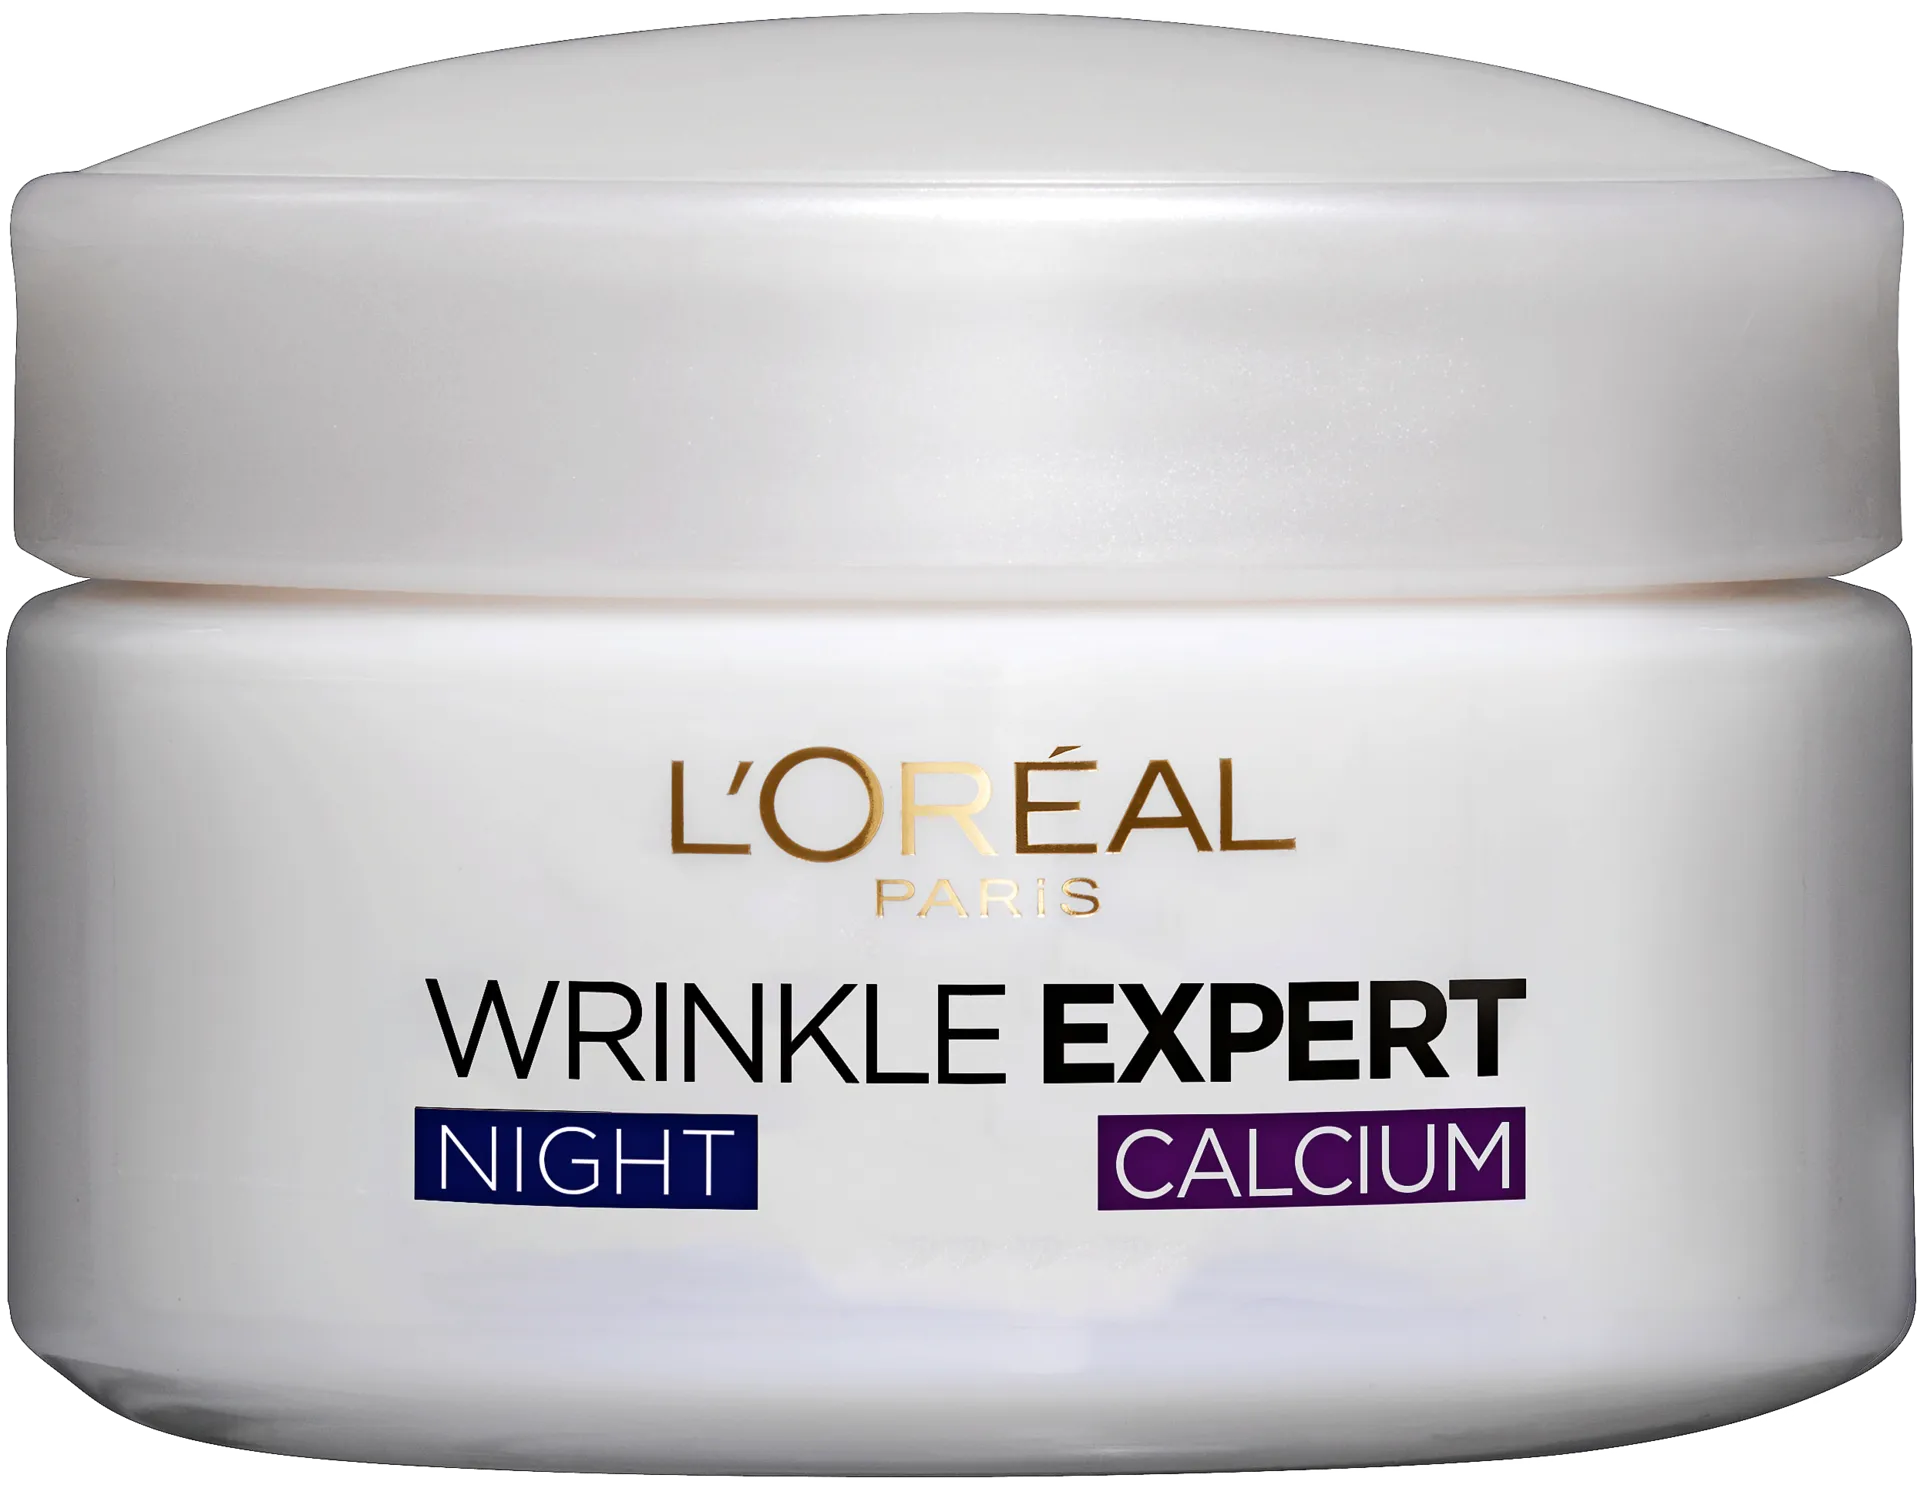 L'Oréal Paris Wrinkle Expert 55+ kiinteyttävä yövoide ryppyjä vastaan 50ml - 1